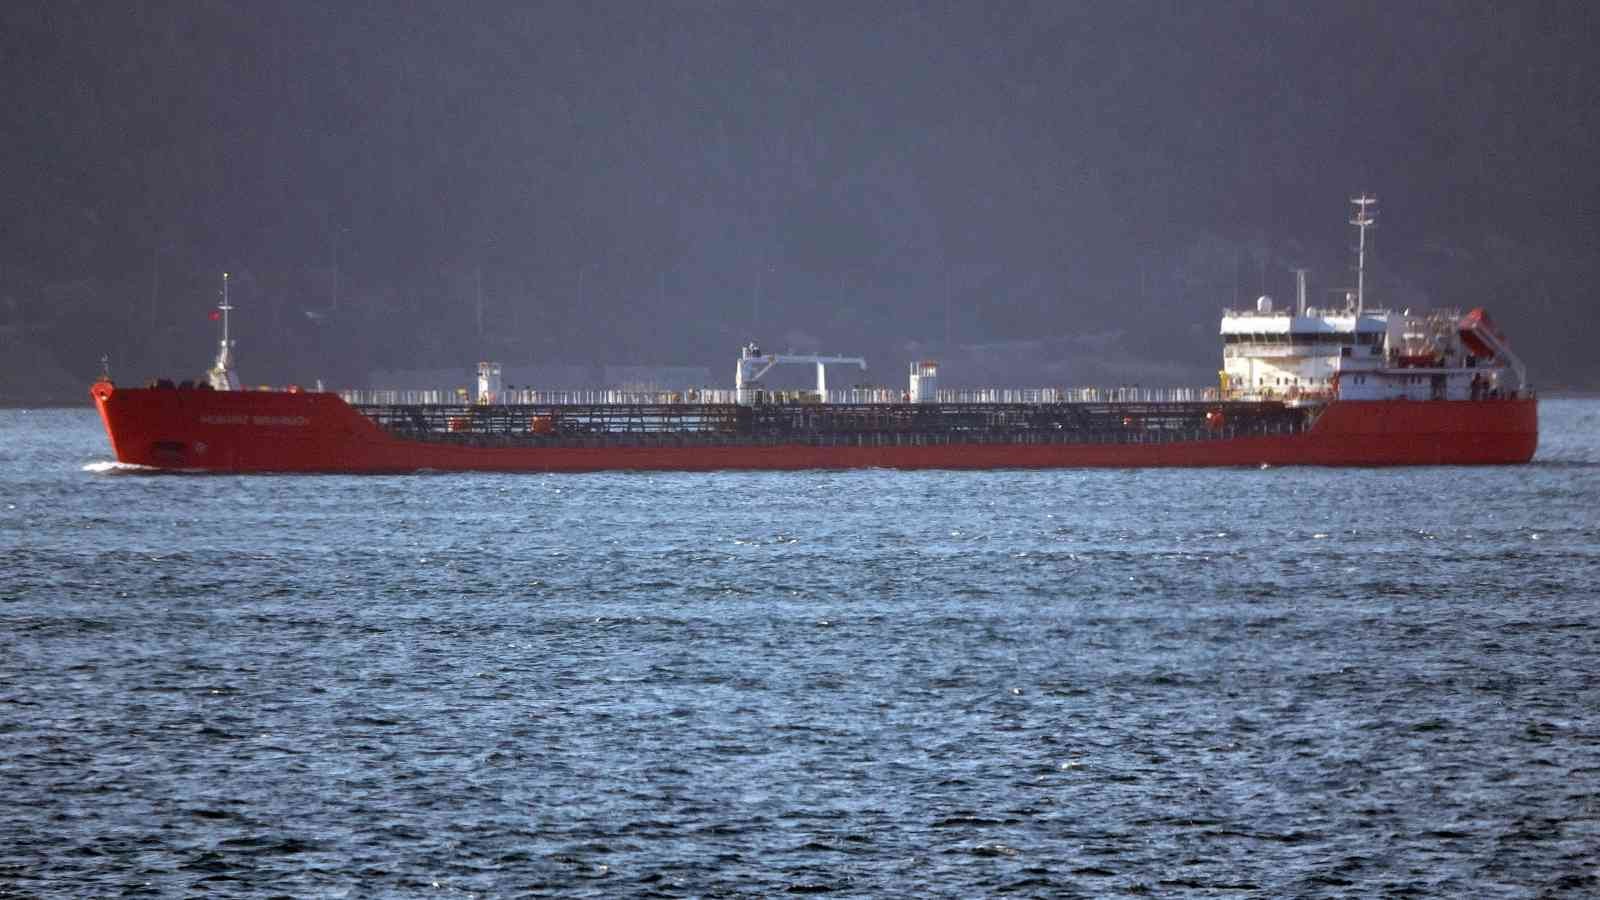 Rusya’nın Azak Denizi Limanı’ndan yola çıkan ayçiçek yağı yüklü ikinci gemi, Çanakkale Boğazı’ndan geçerek Ege Denizi’ne doğru yol aldı. Rusya ...